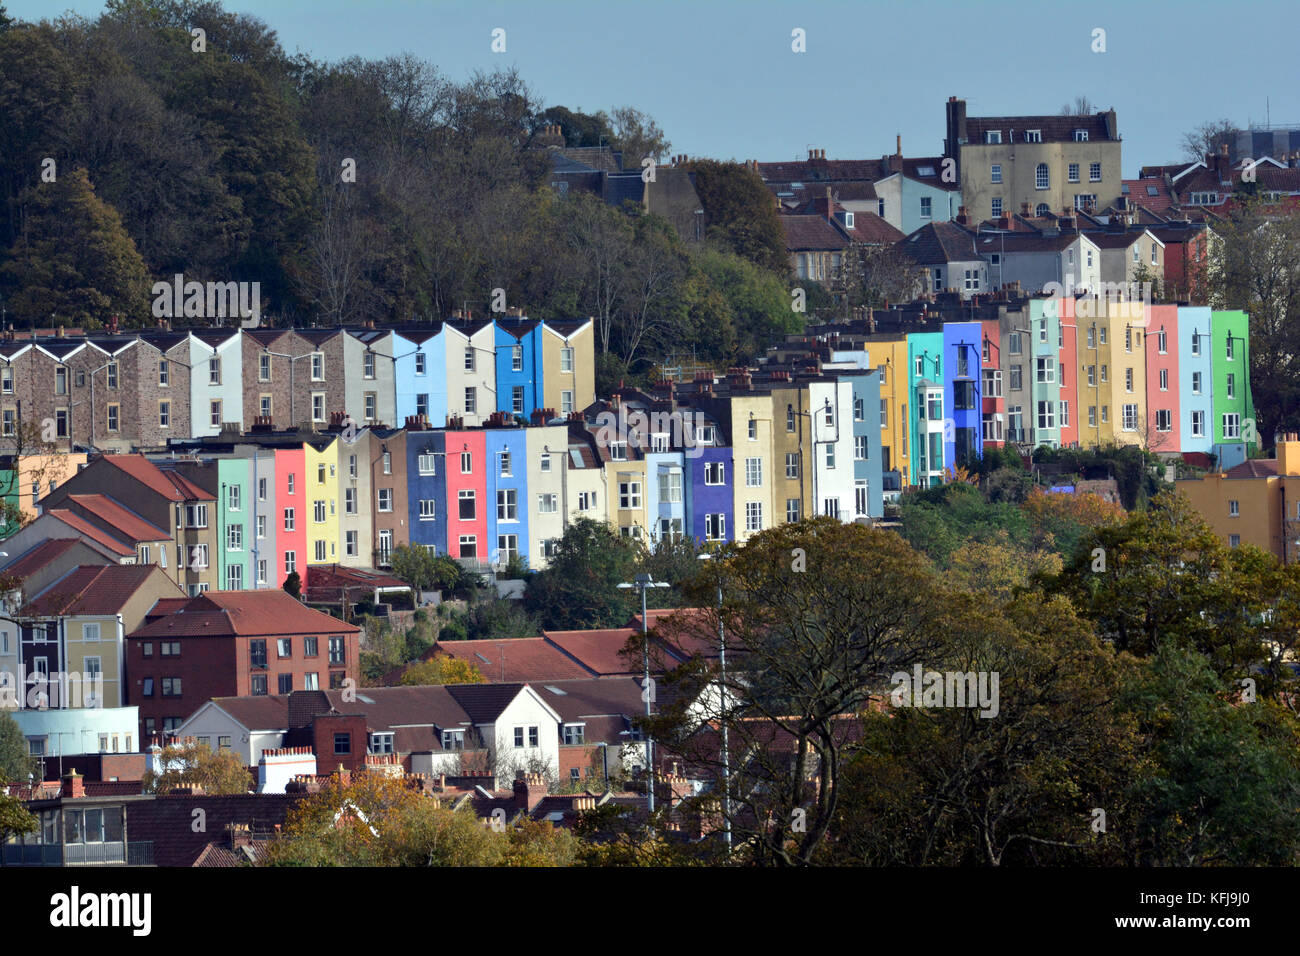 Sul Pendio Di Una Collina Nella Citta Di Bristol Si Trova Una Fila Di Case Colorate E Appartamenti Con Fantastiche Vedute Della Nostra Citta Bristol E Stato Votato Come Il Miglior Posto